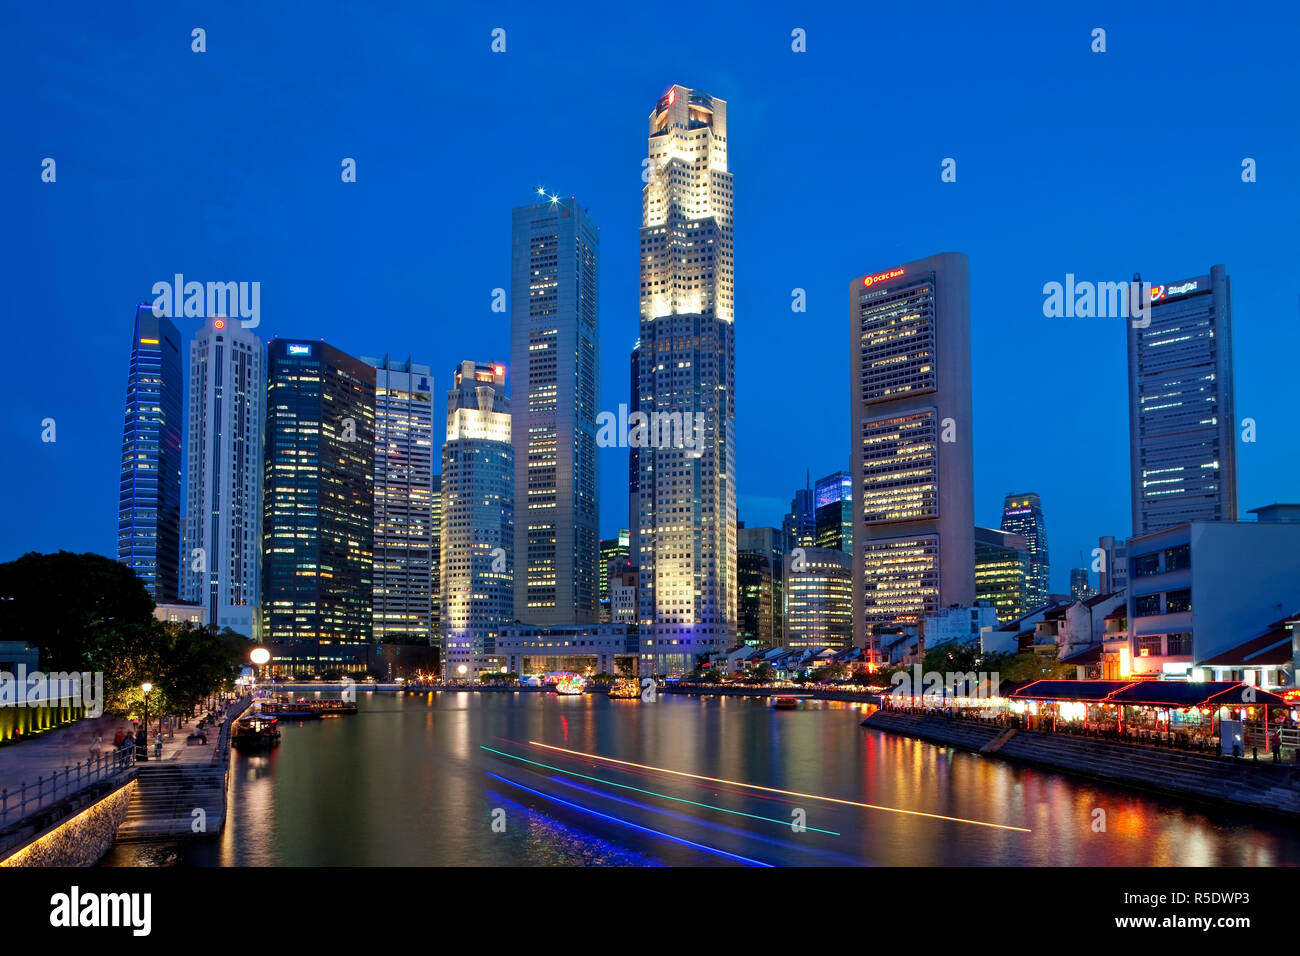 Boat Quay e il Fiume Singapore con il quartiere finanziario accesa al crepuscolo, Singapore, Sud-est asiatico Foto Stock